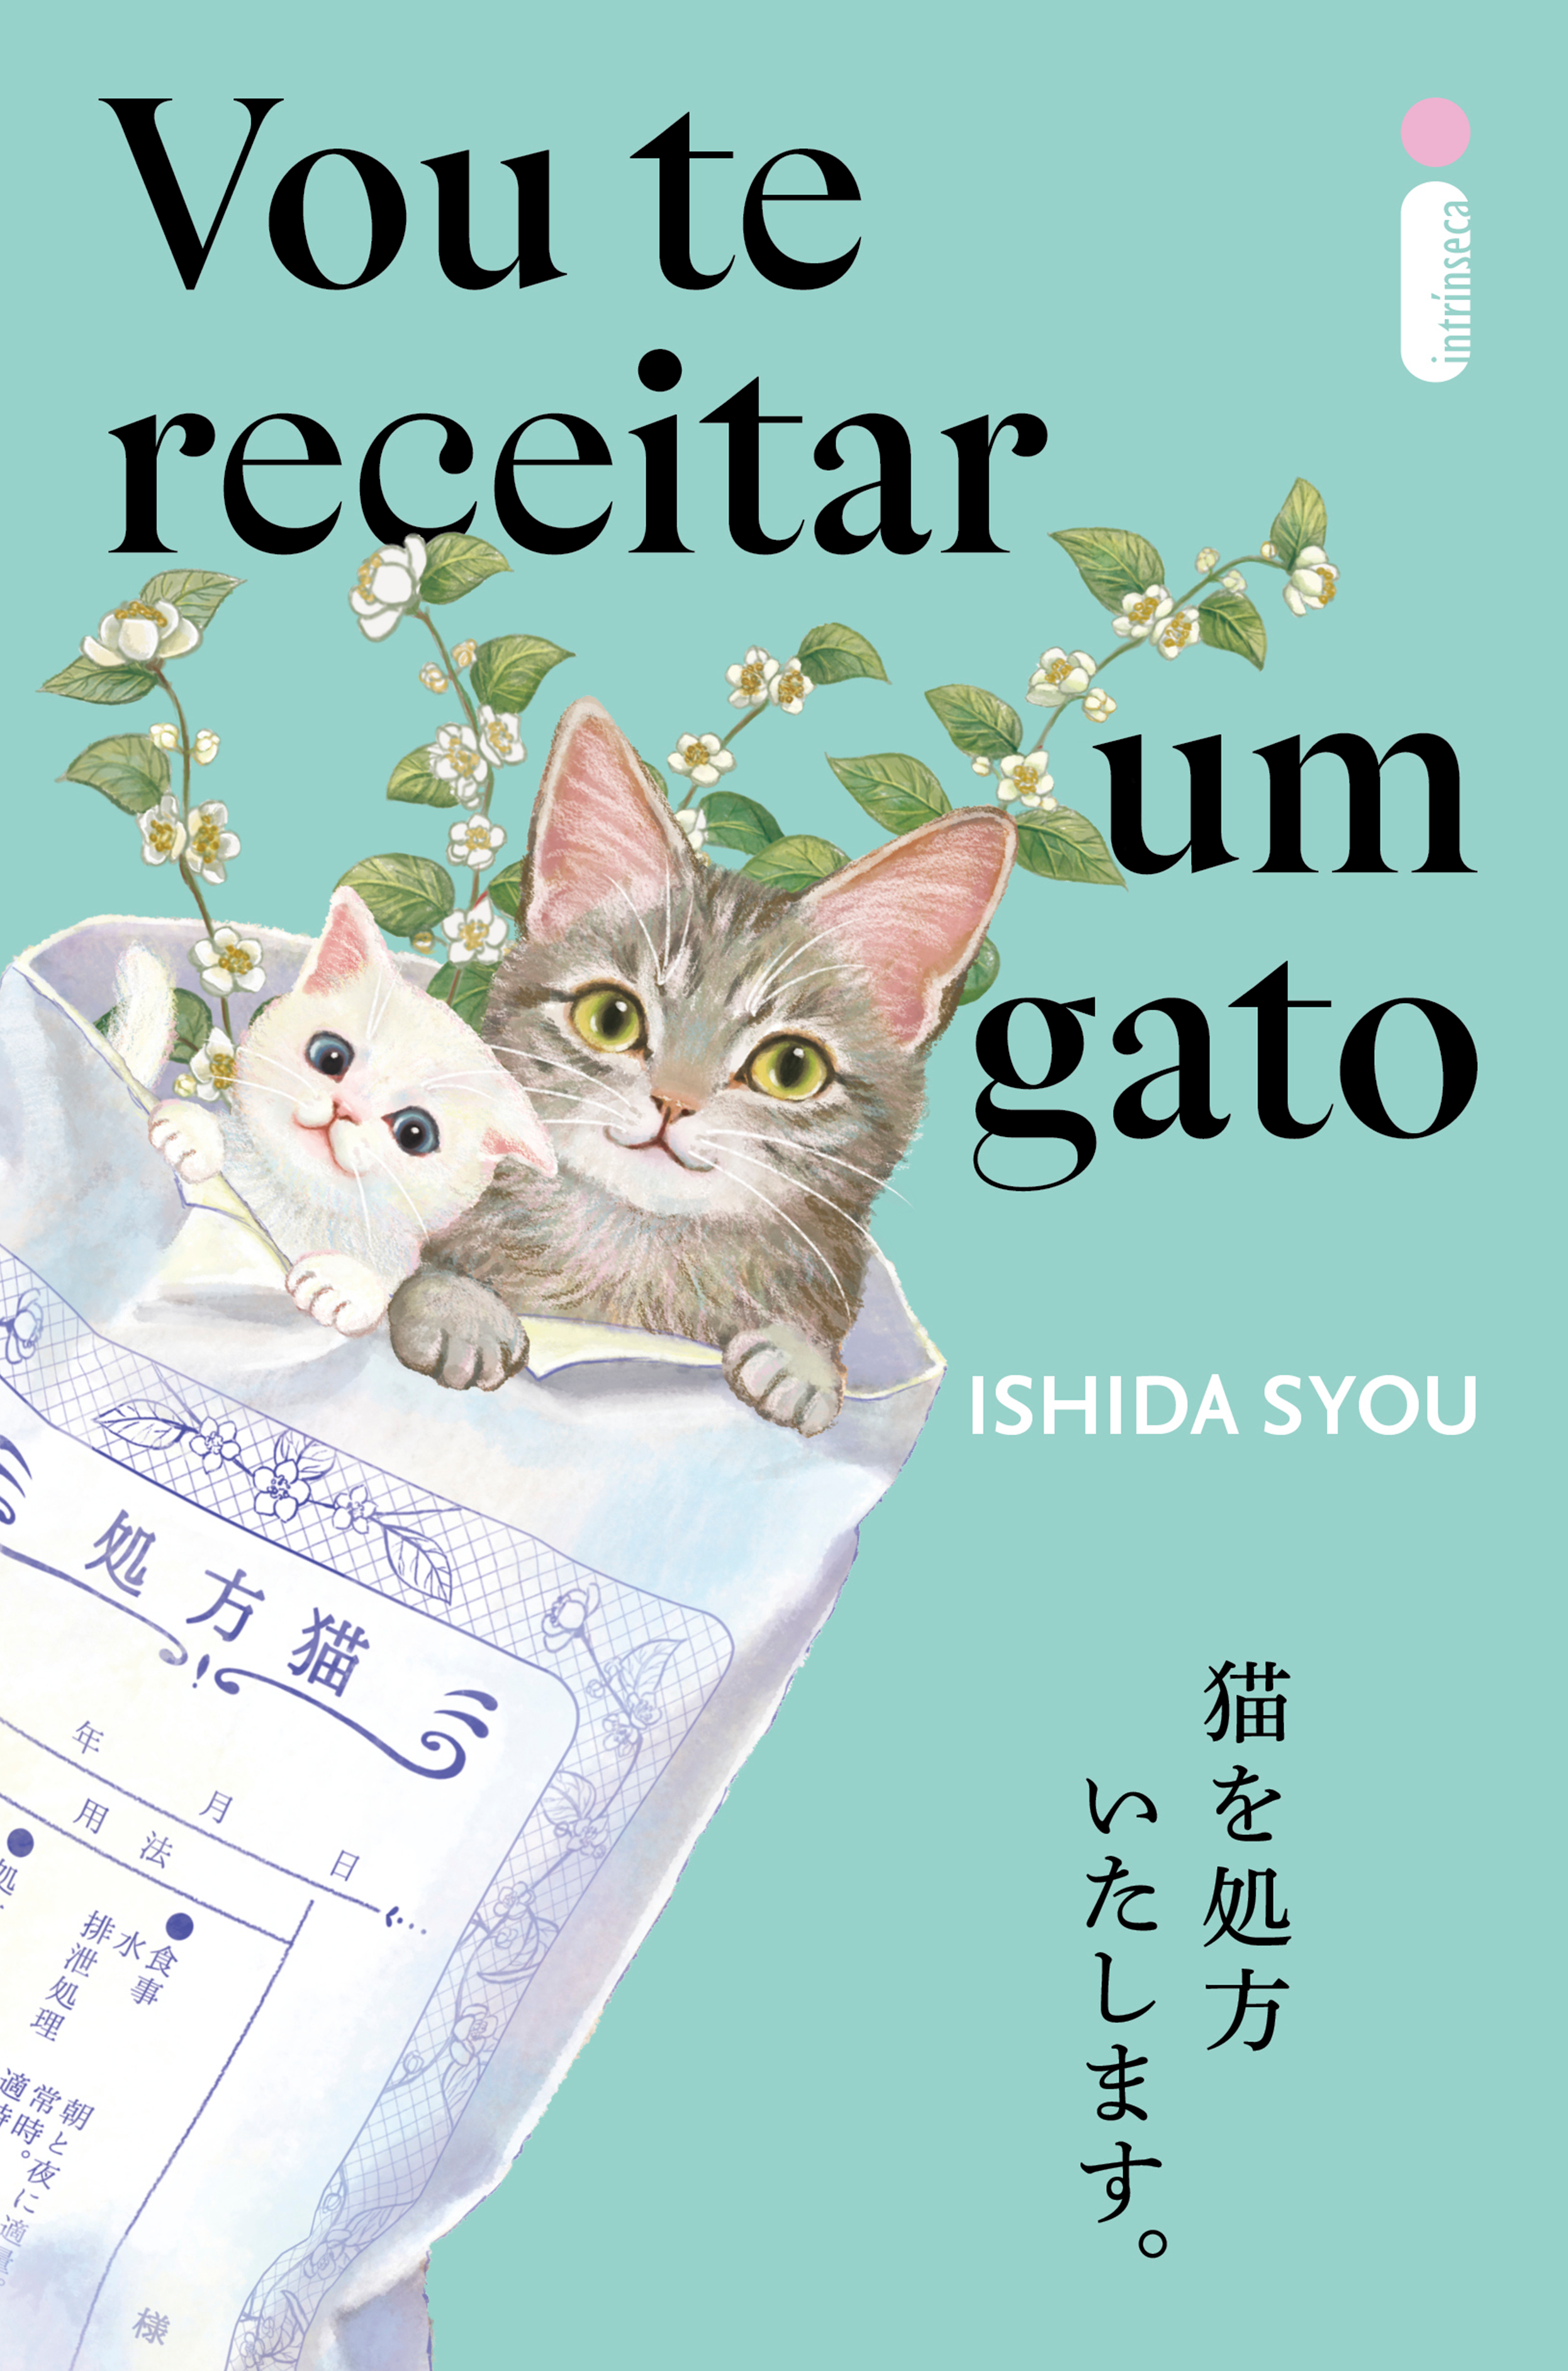 Vou te receitar um gato | obra de literatura japonesa sobre o poder do amor dos animais